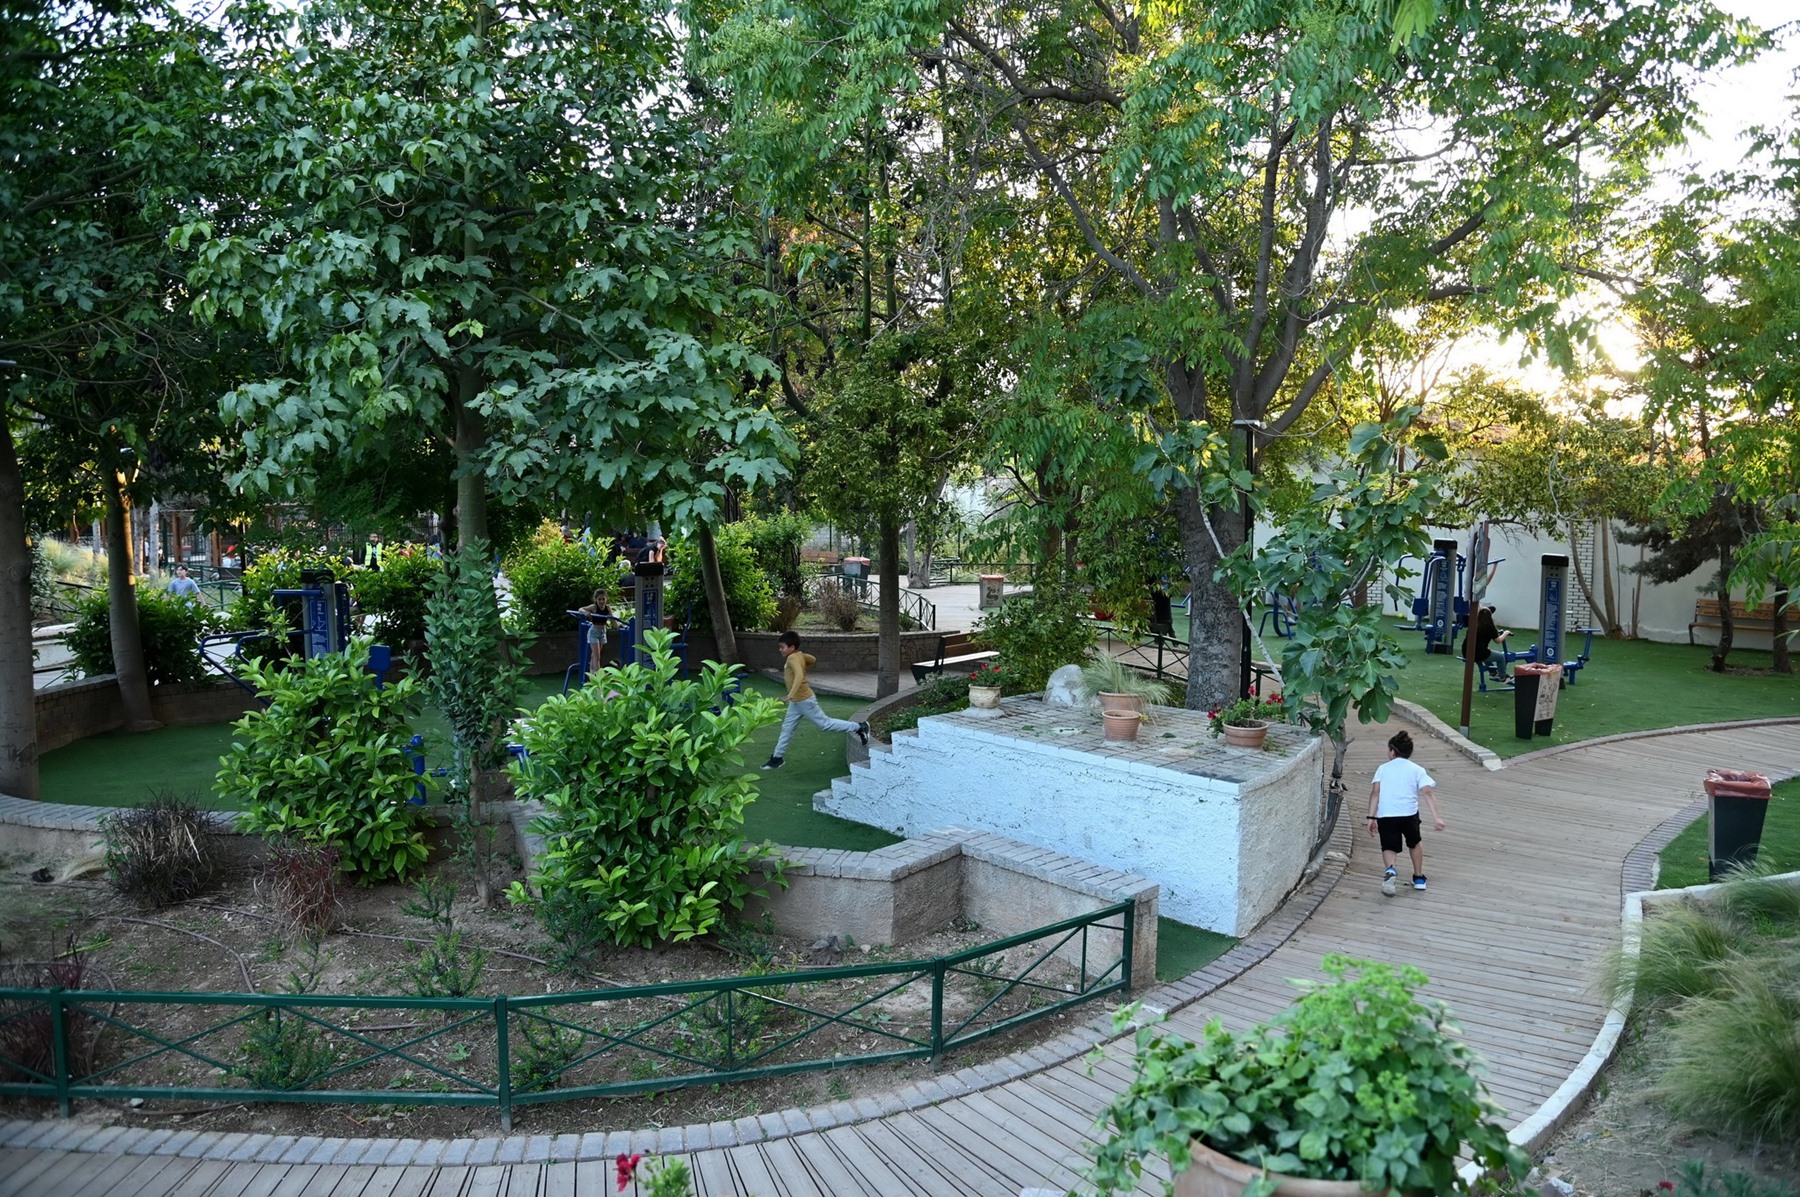 Έργο ανάπλασης πάρκου”Τρίγωνο” Δήμος Μοσχάτου-Ταύρου: Ολοκληρώθηκε το έργο